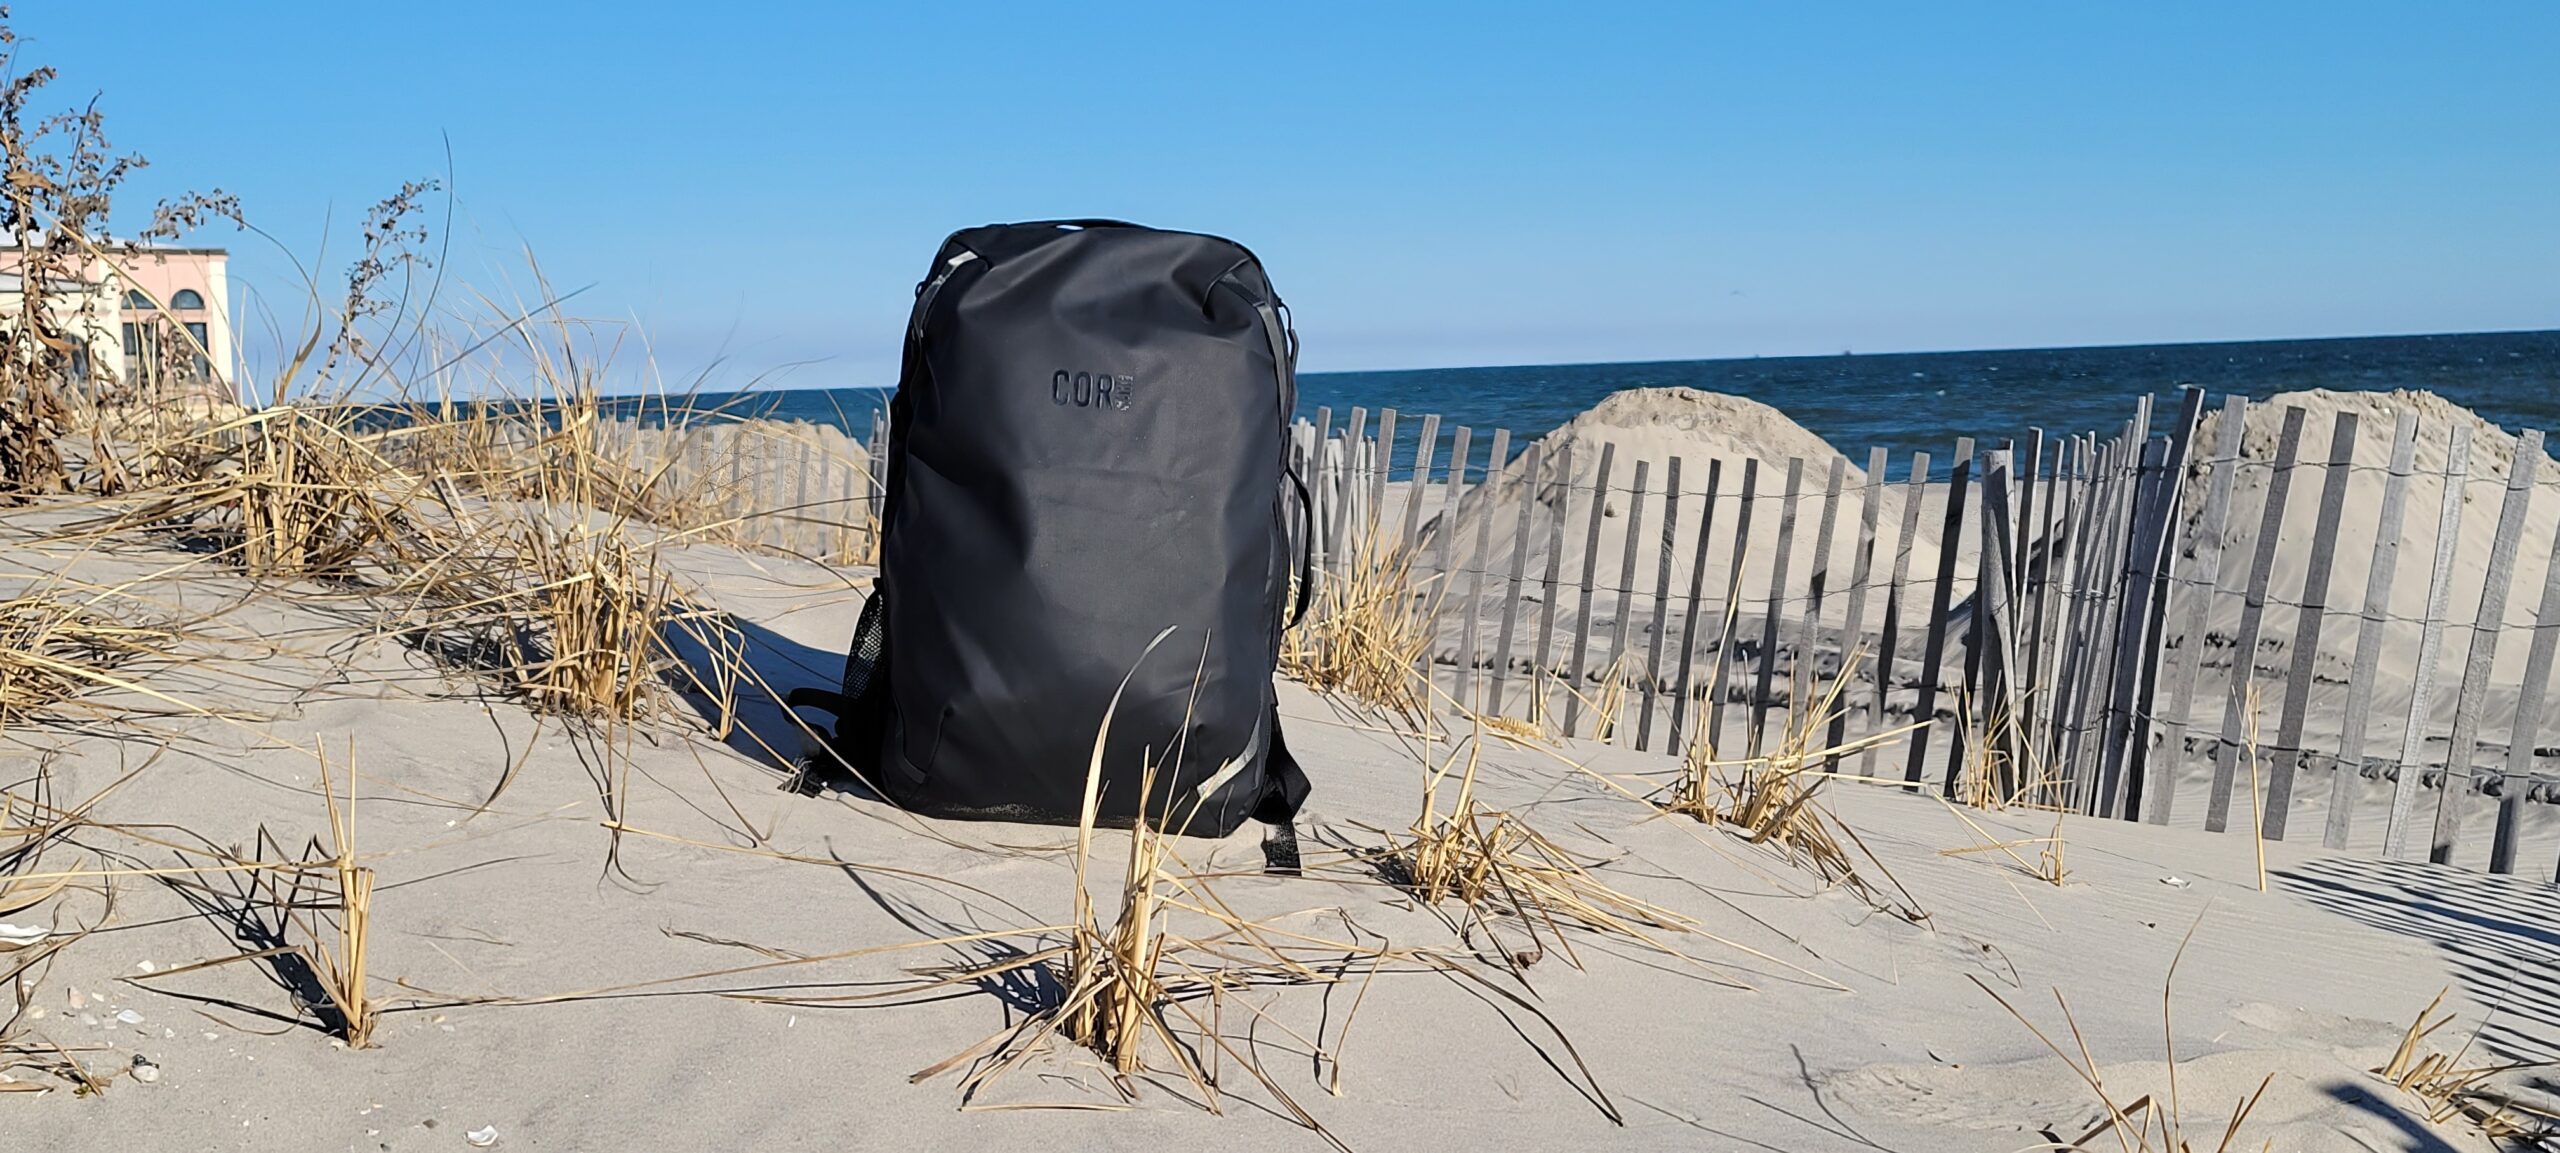 COR Surf Island Hopper Travel Backpack - The Gear Bunker